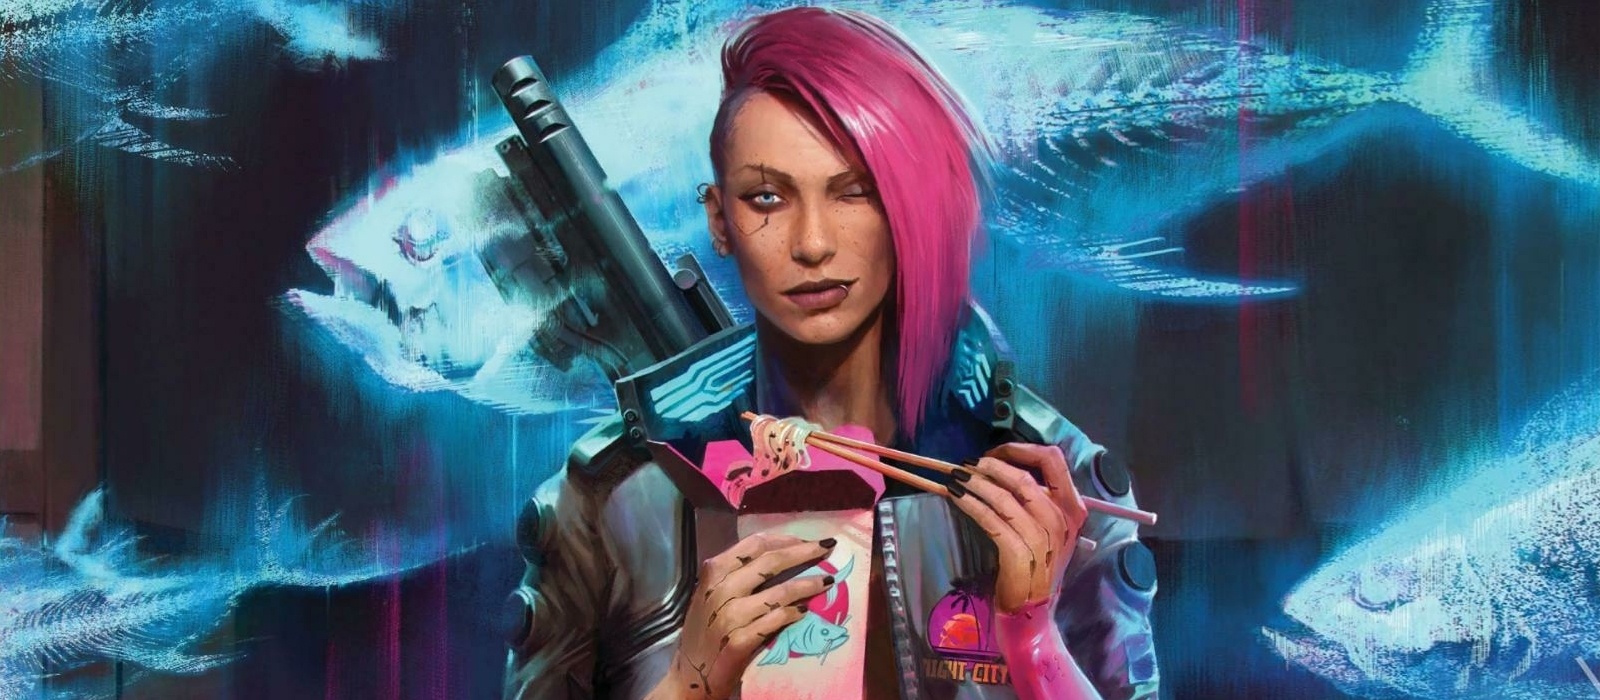 29 тачек, новые арты с Ви, Джонни и пушками — Cyberpunk 2077 в PlayStation Magazine